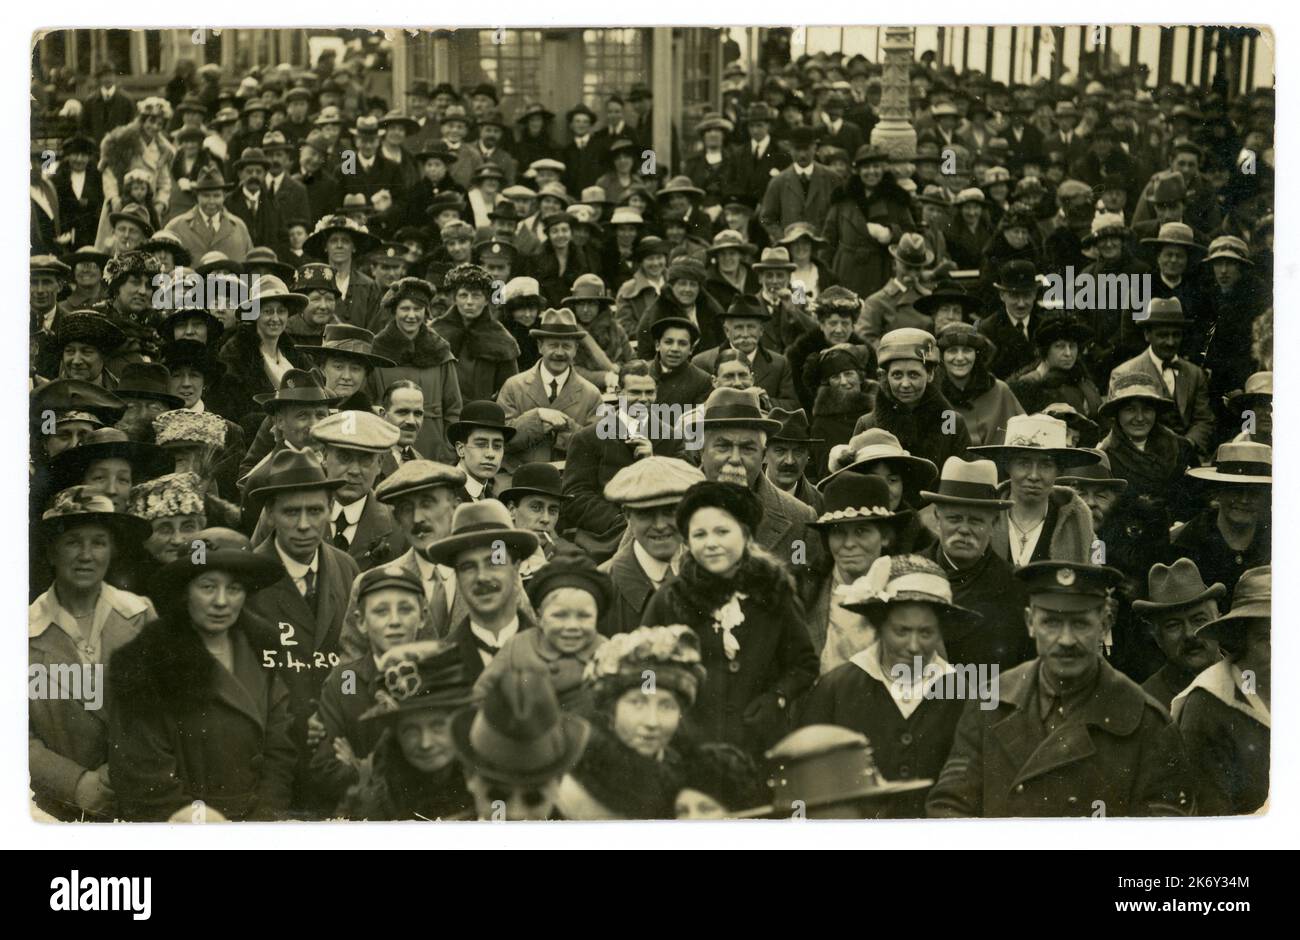 Ursprünglich aus den 1920er Jahren stammende Menschenmenge aus der Arbeiterklasse vom 5. April 1920, britisches Seebad, viele Charaktere und Mode, darunter flache Mützen und homburger Hüte. UK Retro Meeresfoto. Stockfoto